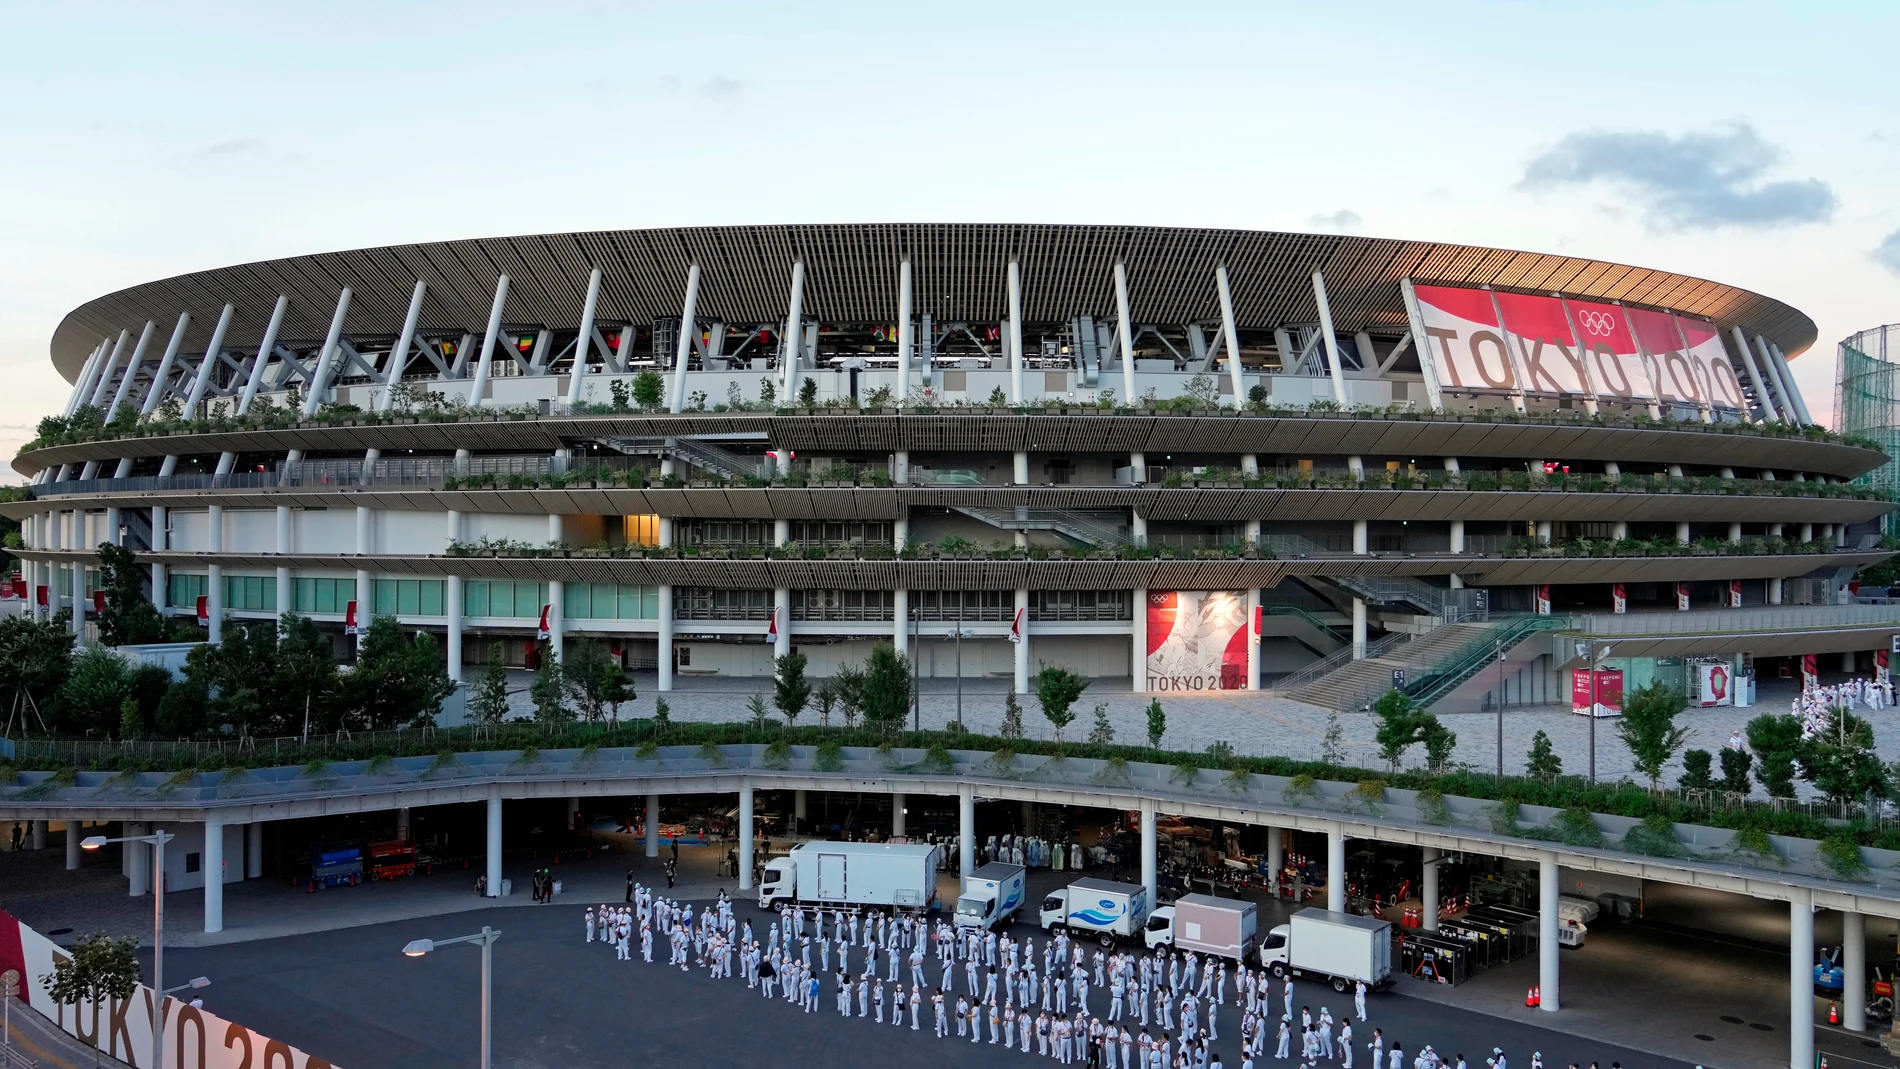 Un trabajador de los Juego de Tokio es arrestado y acusado de violar a una mujer en el Estadio Olímpico